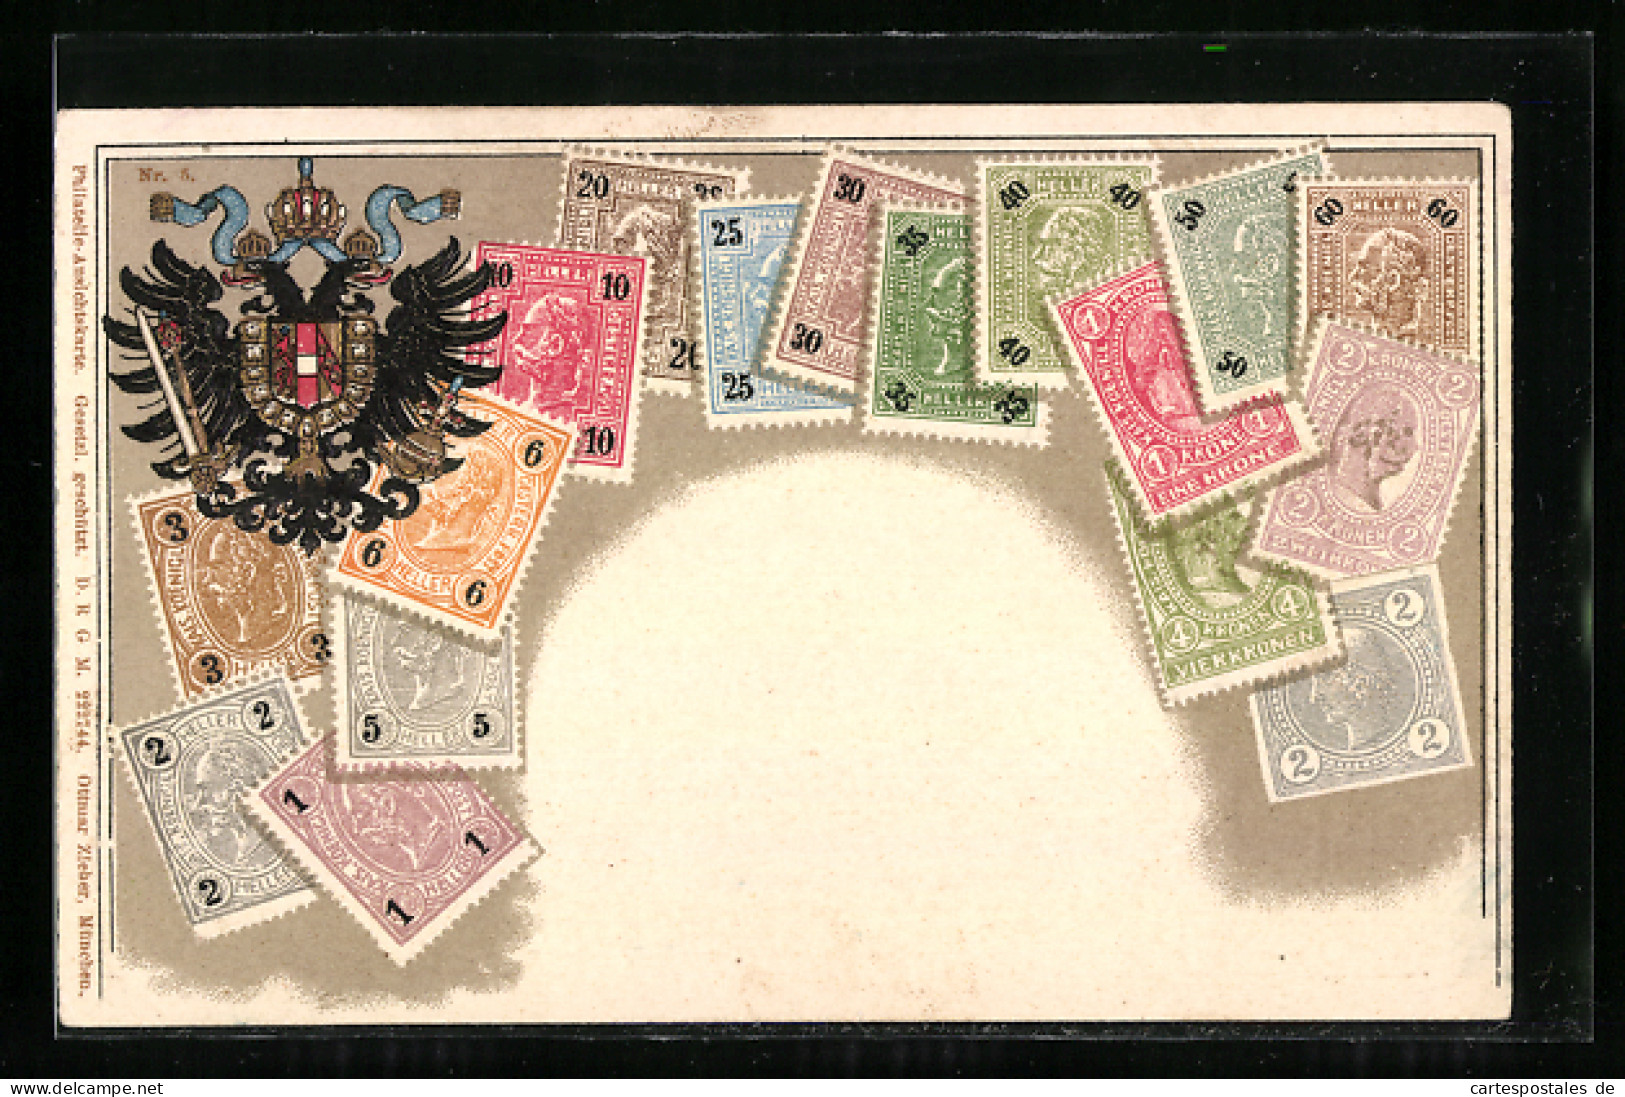 Präge-AK Österreich, Briefmarken Und Doppeladler  - Briefmarken (Abbildungen)